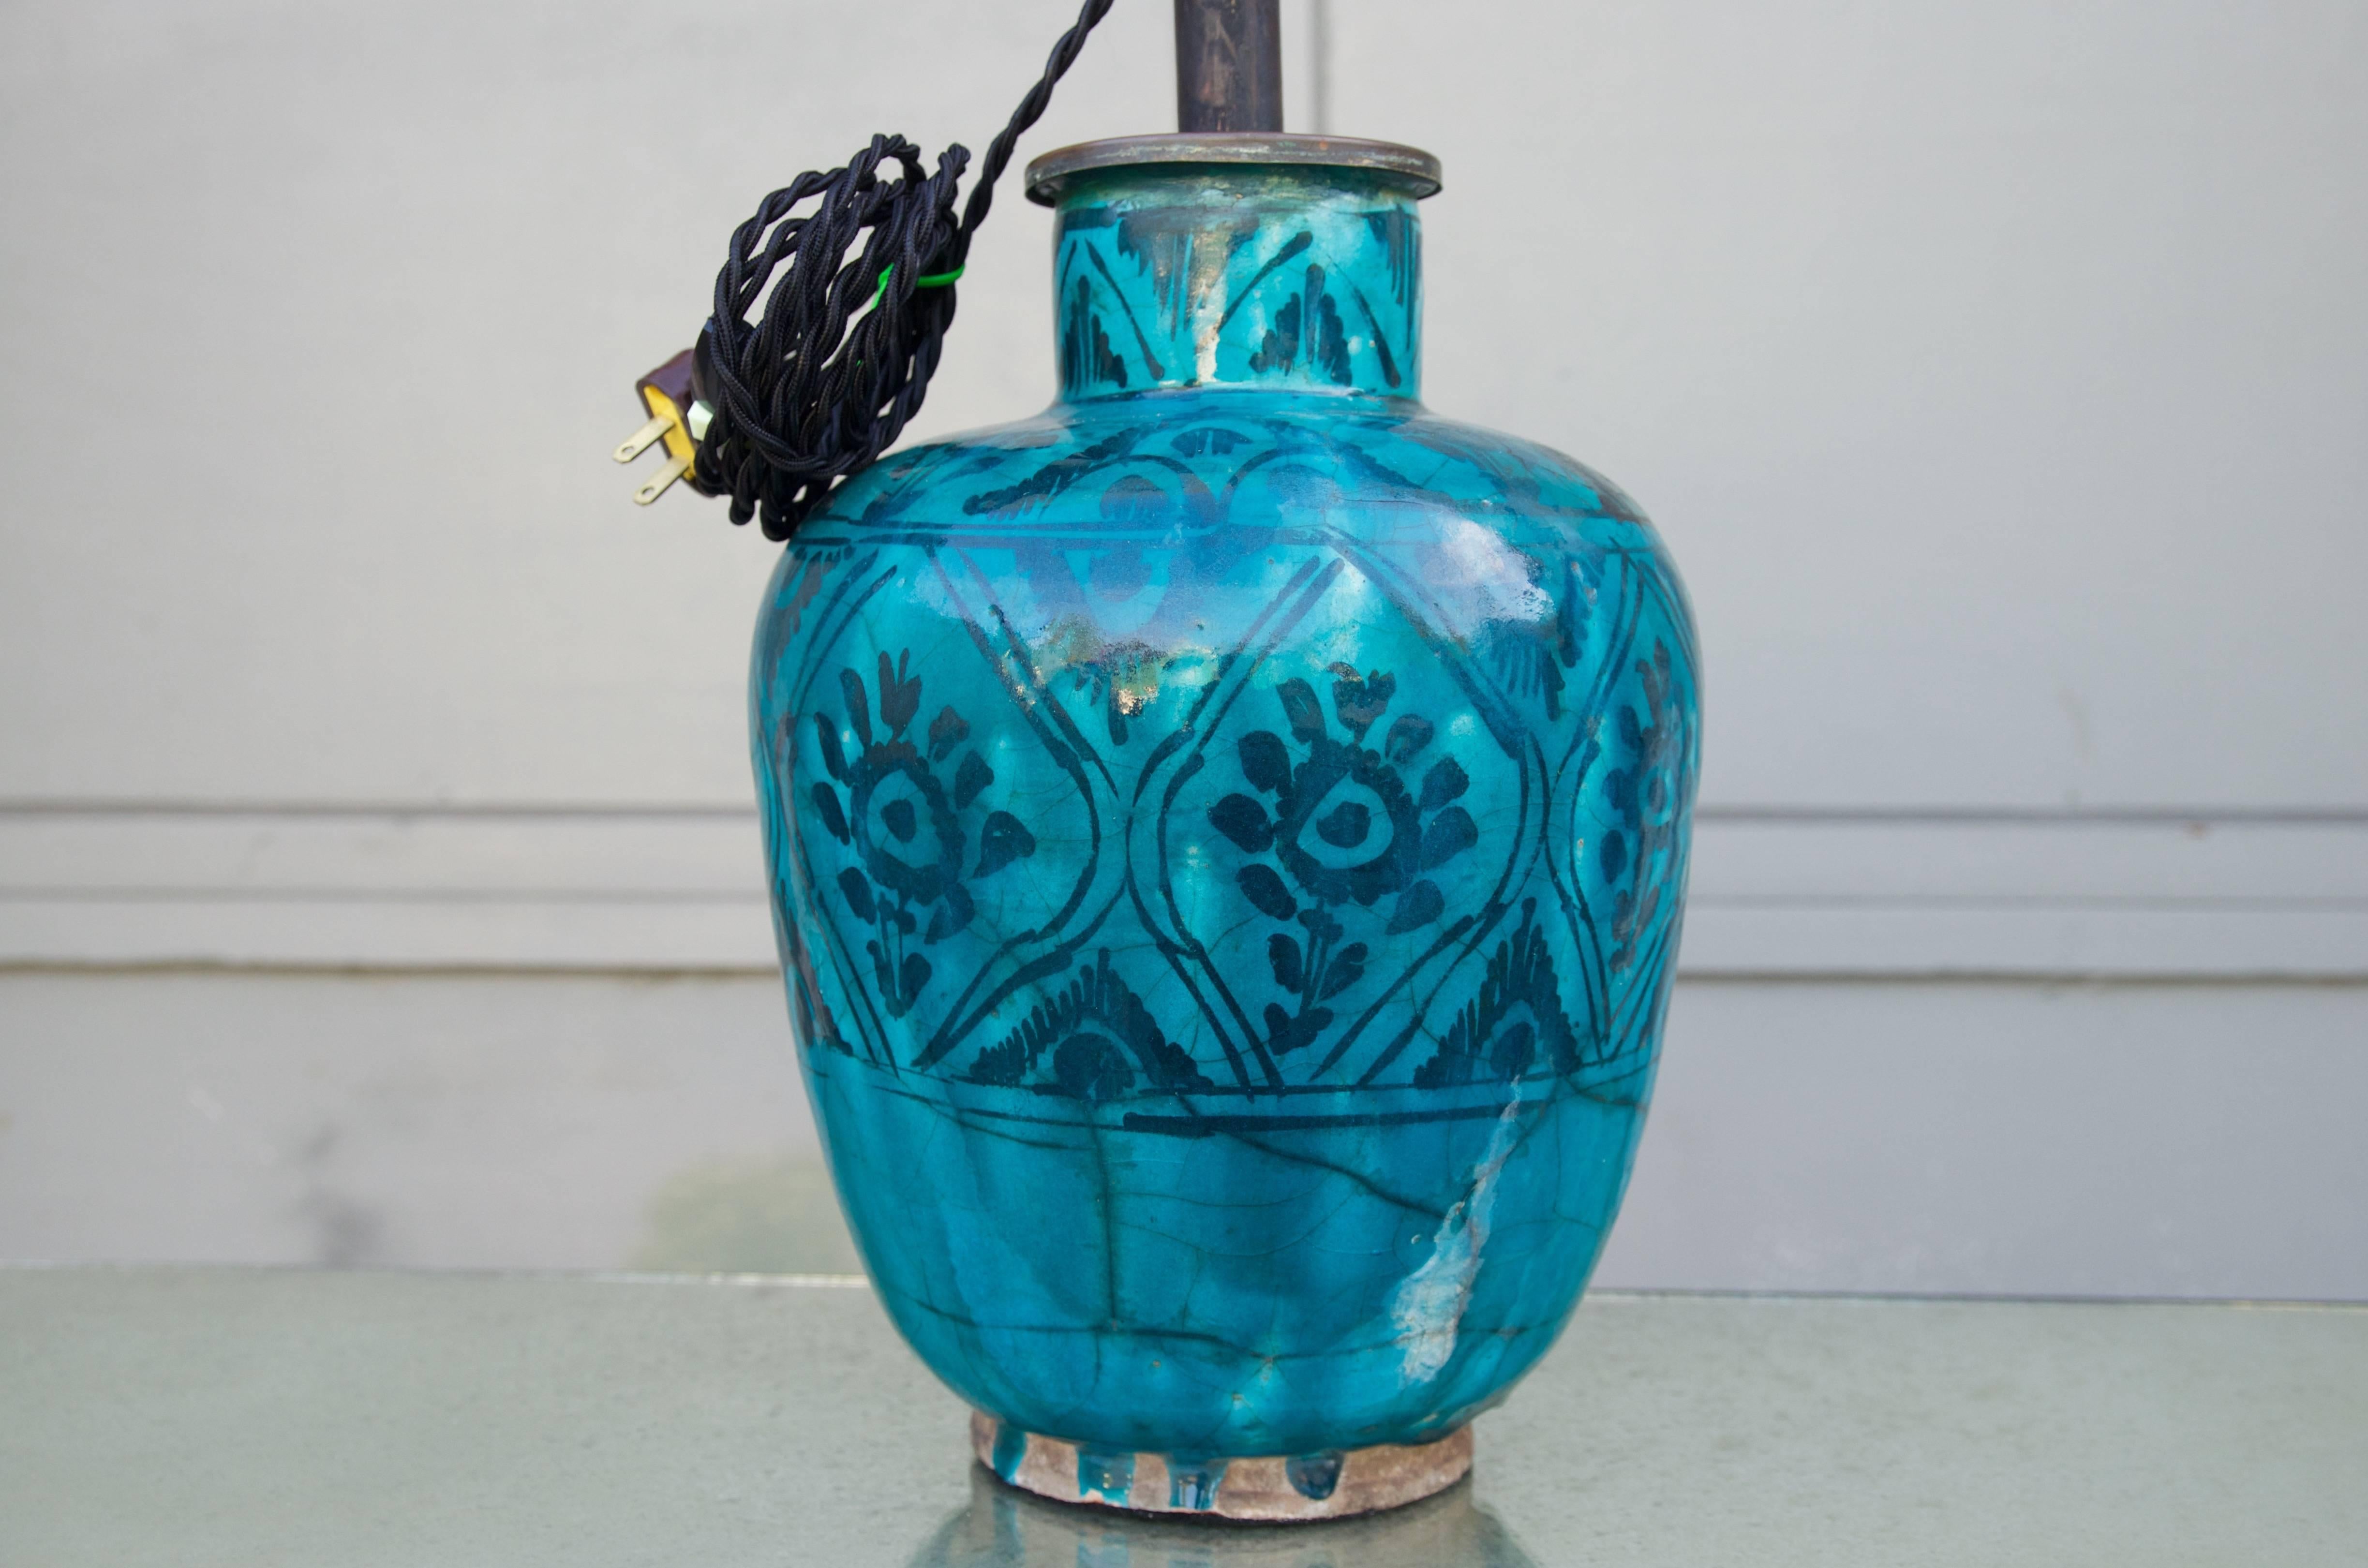 19th Century Antique Turquoise Glazed Ceramic Persian Table Lamp